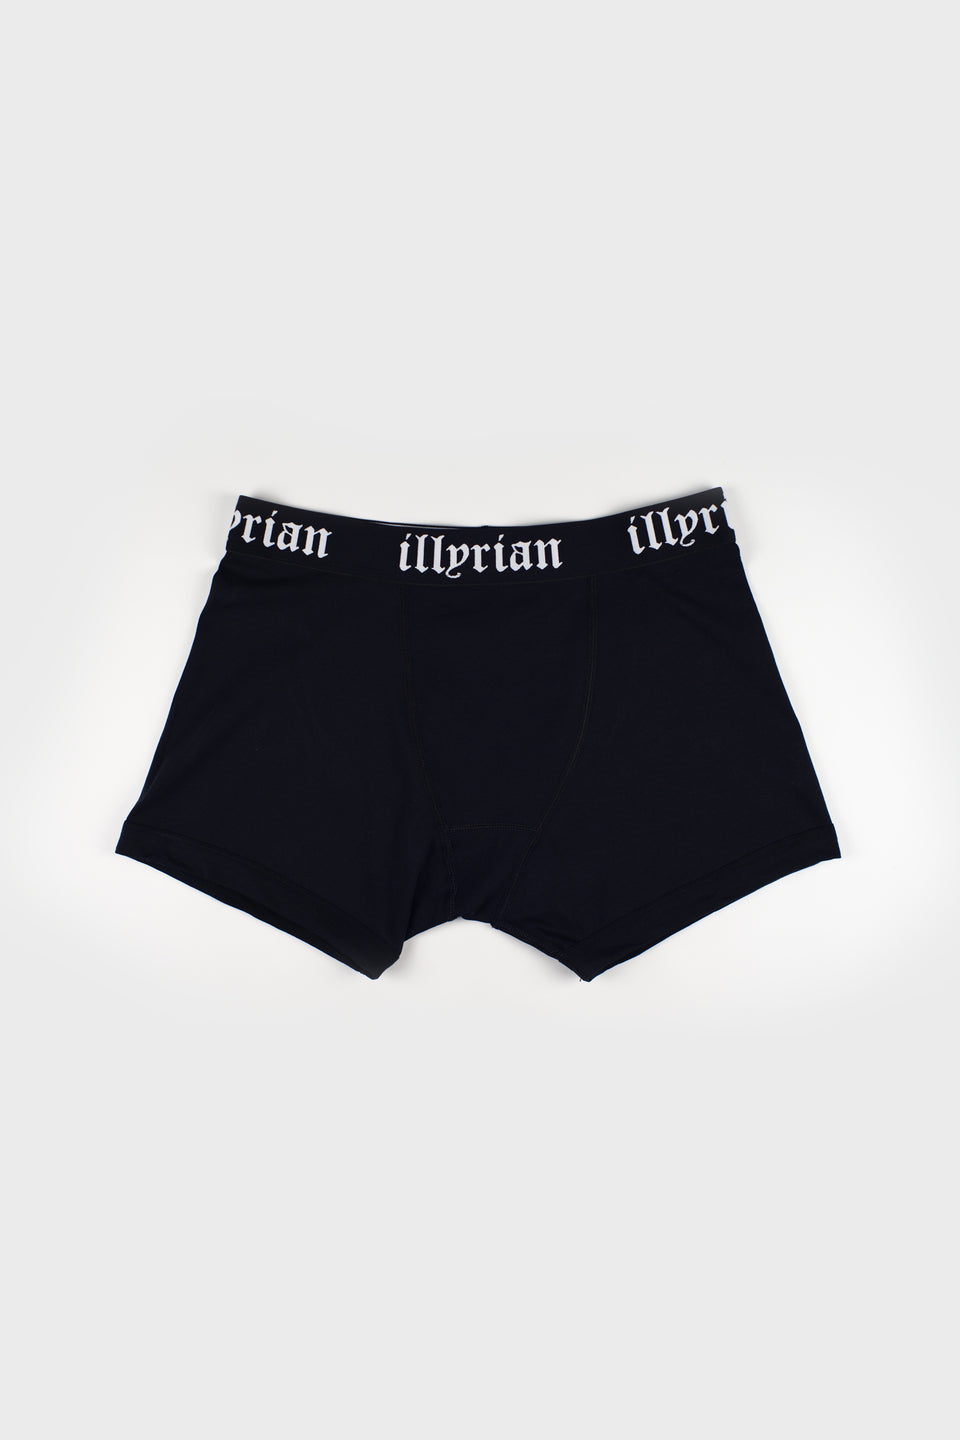 Men's Illyrian Underwear